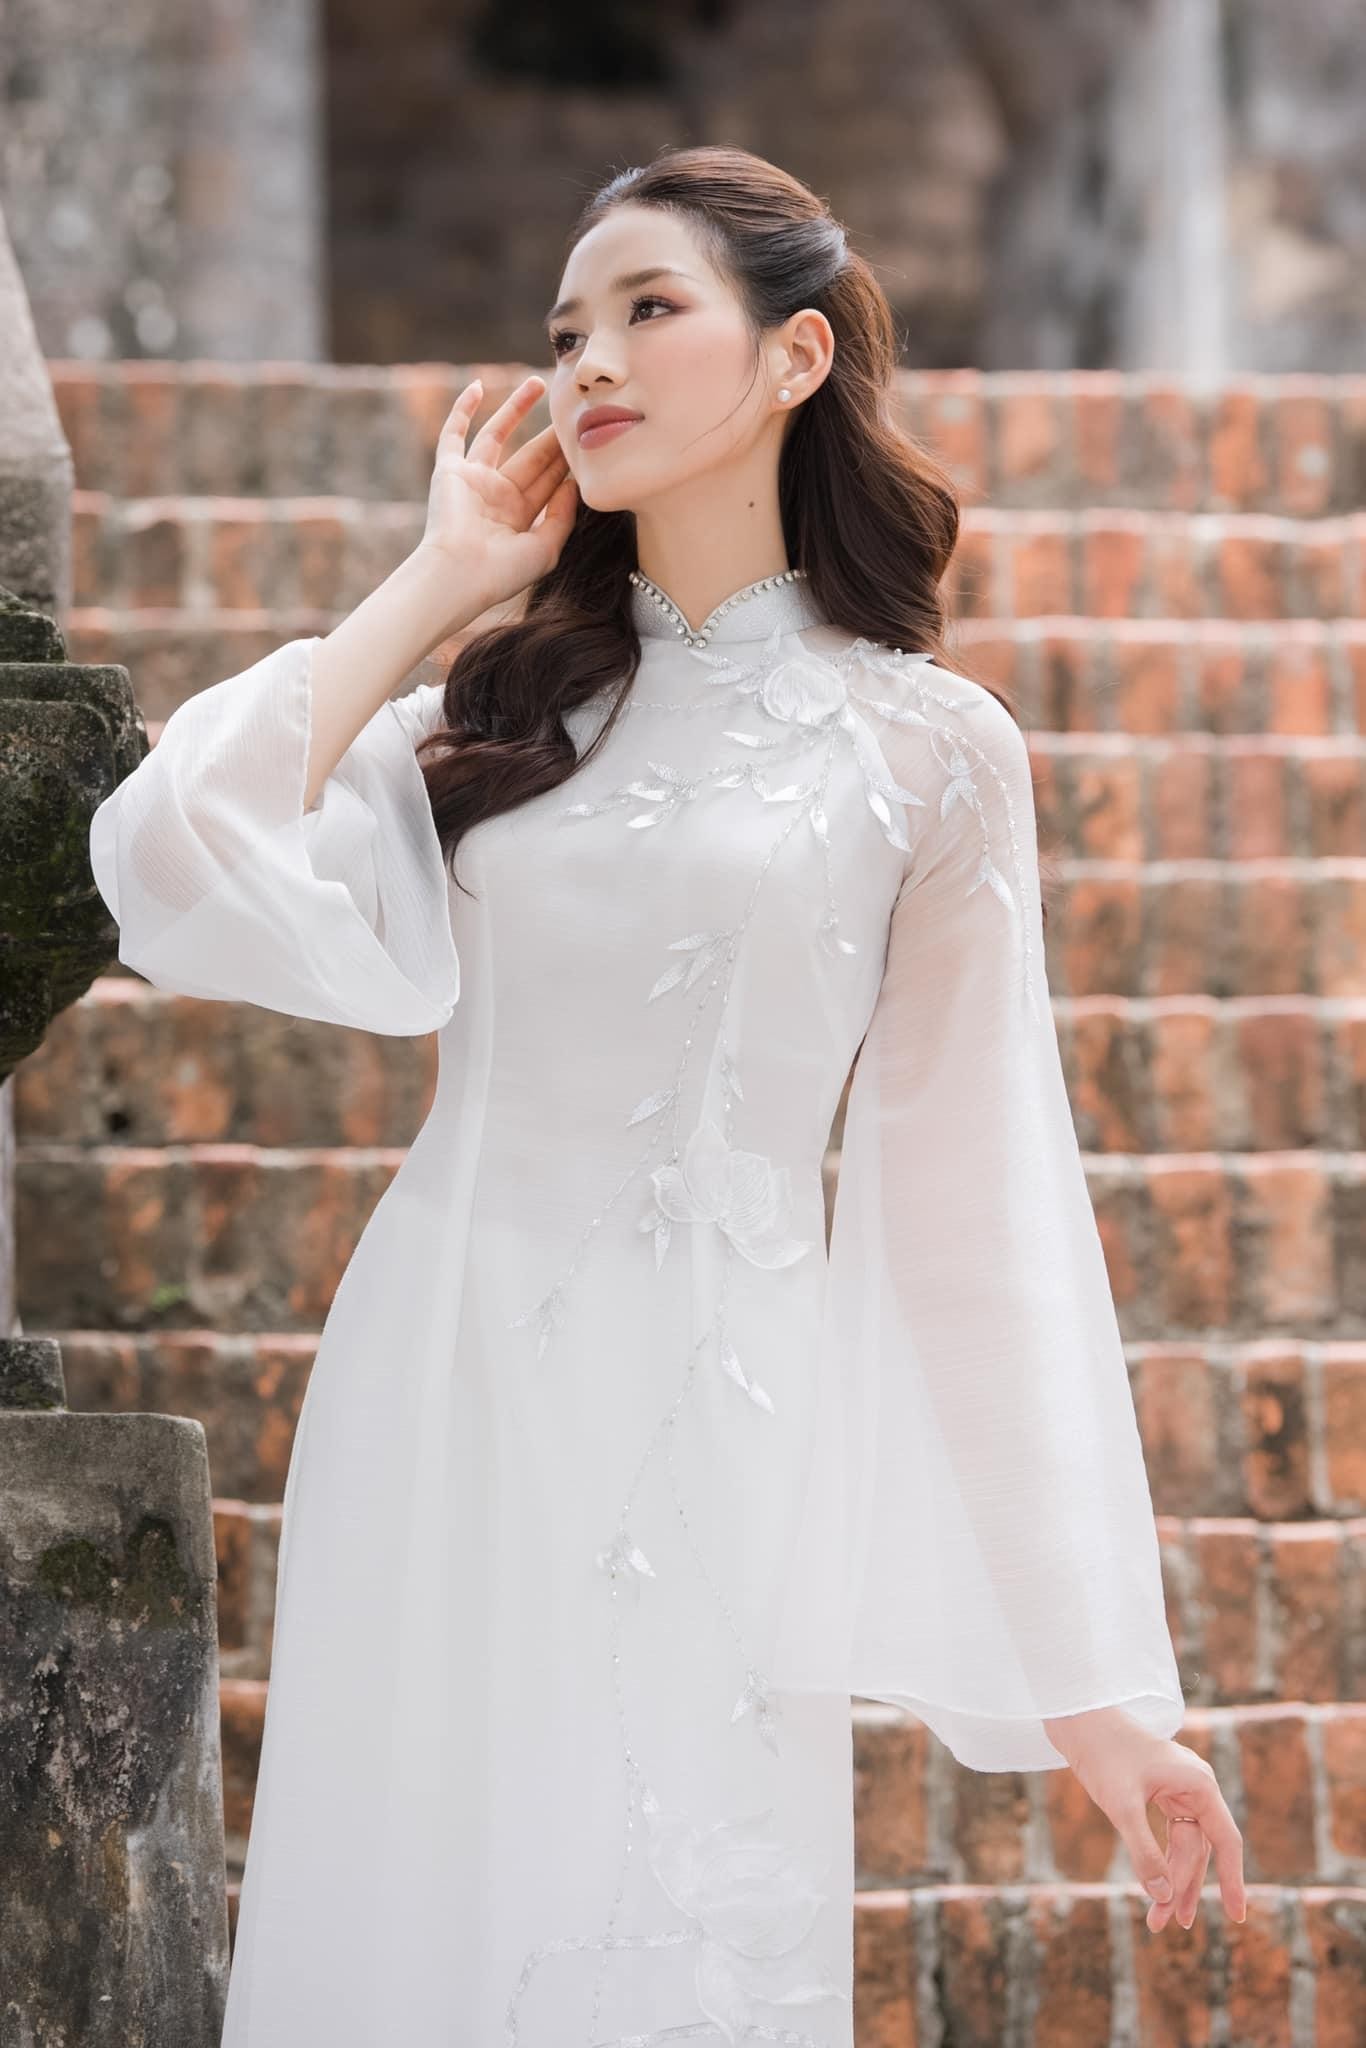 Hoa hậu Đỗ Thị Hà đẹp thuần khiết với áo dài trắng-2